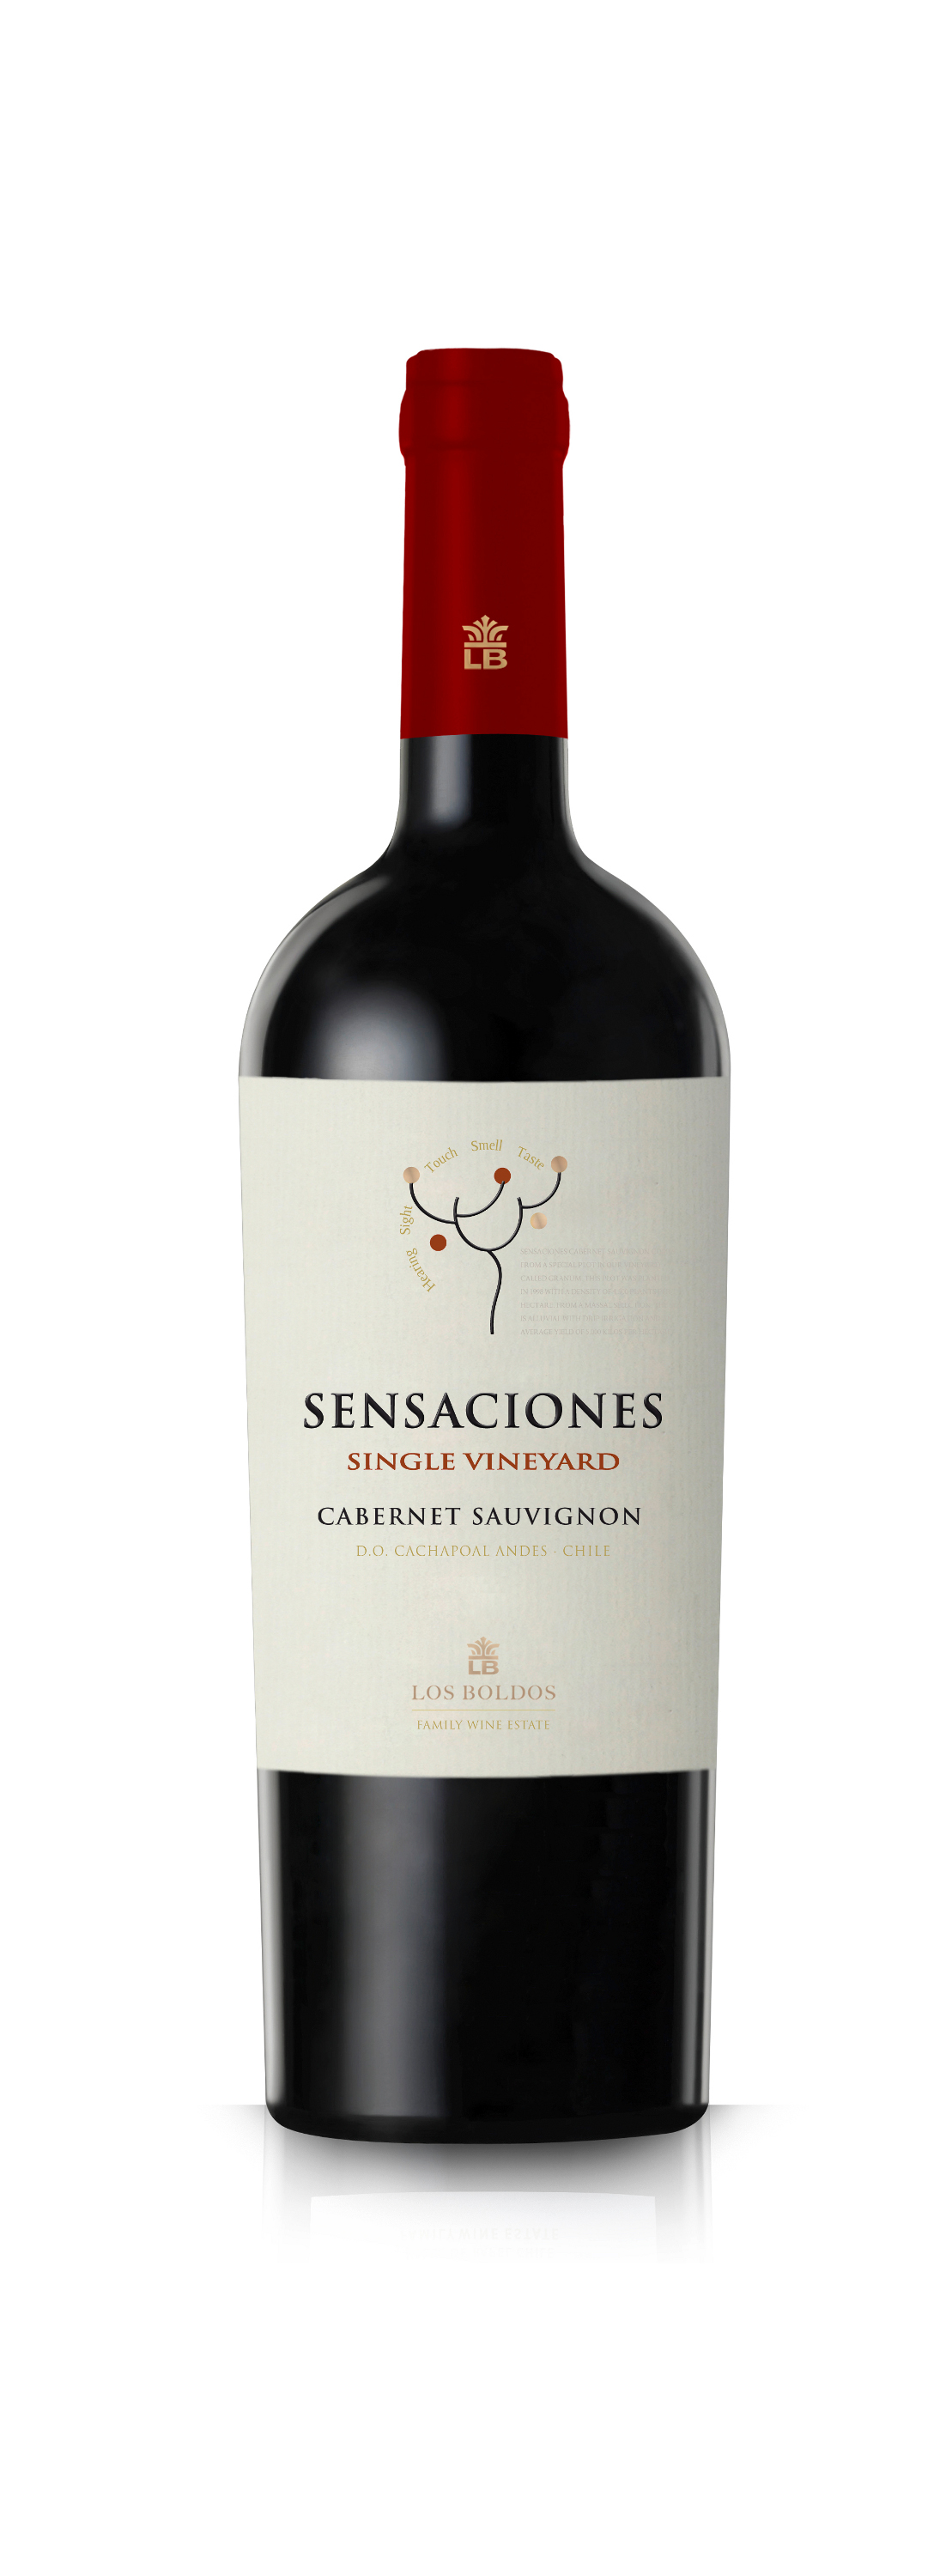 Sensaciones Shiraz - Rượu vang Chile nhập khẩu chính hãng